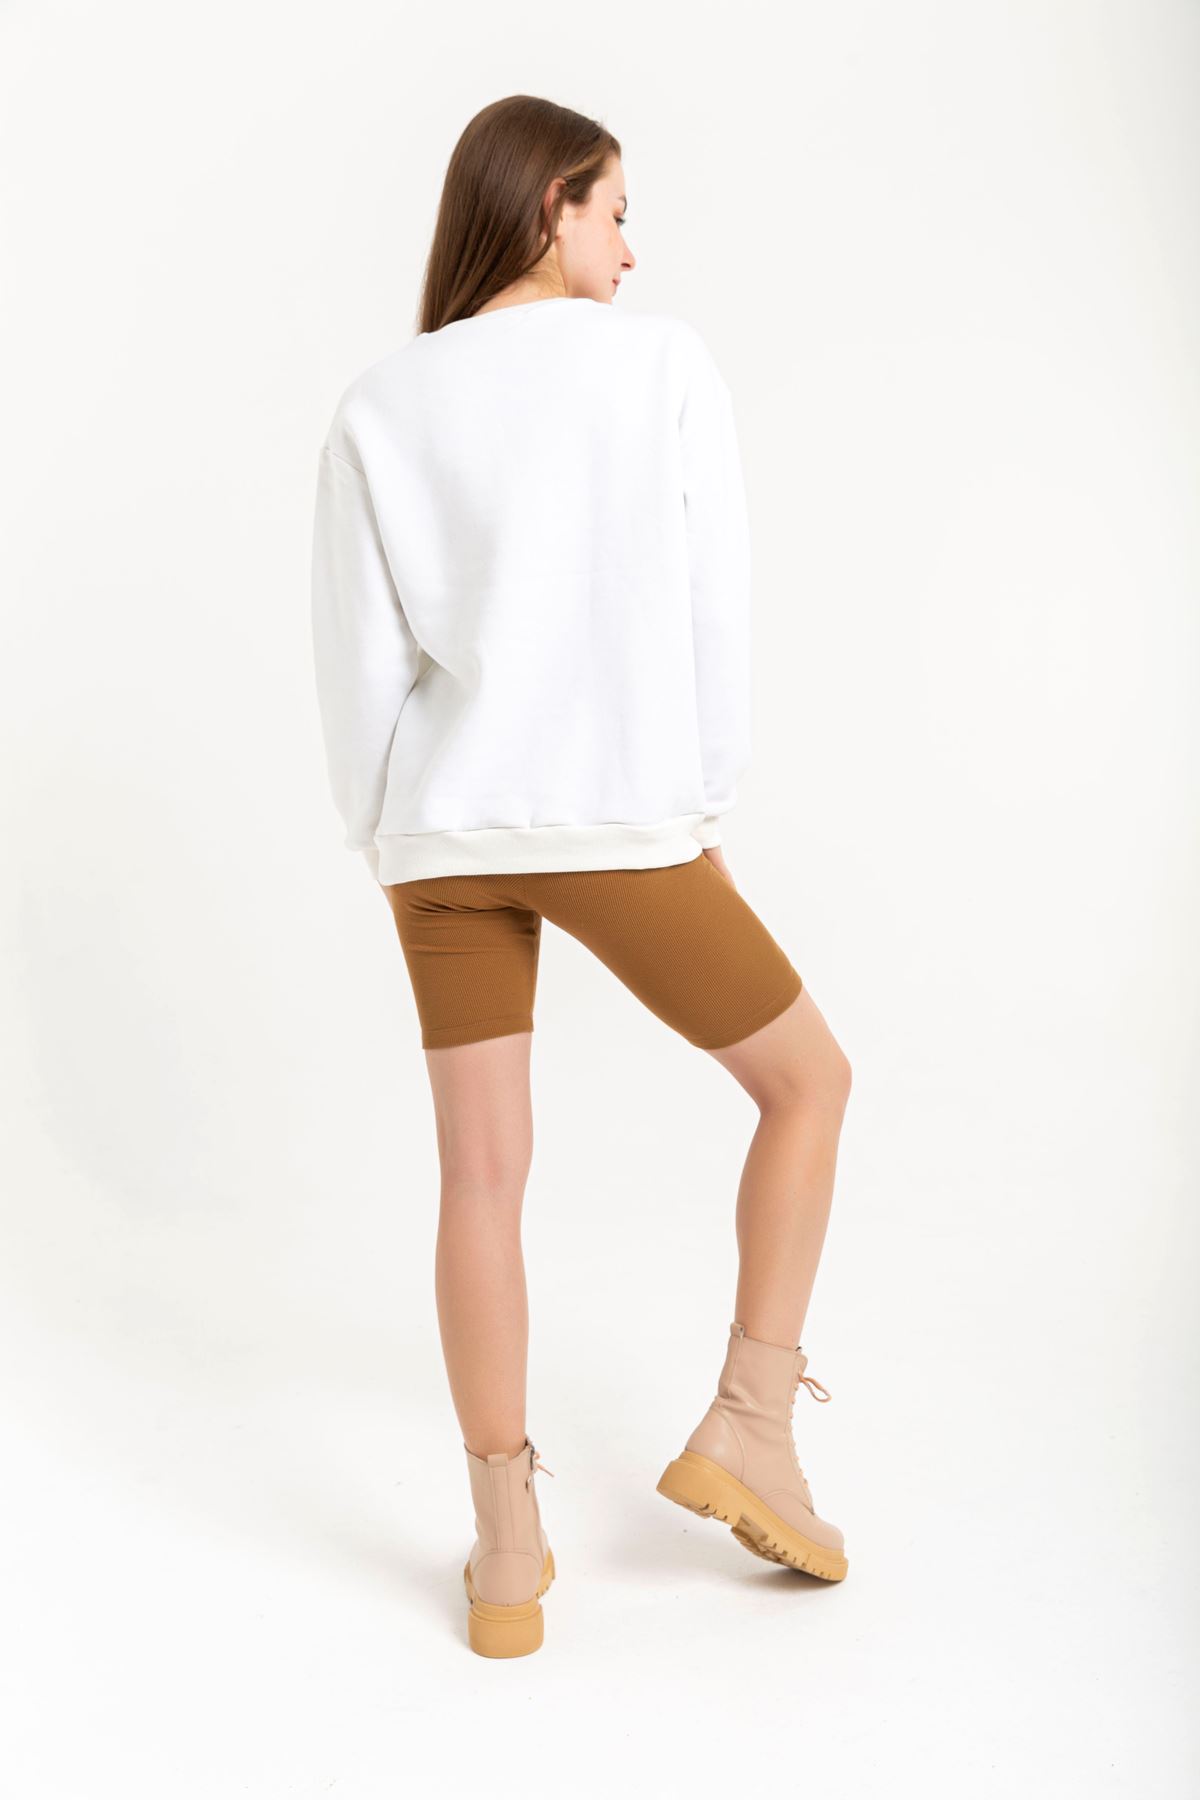 Jesica Fabric Long Sleeve Hooded Oversize Zip Women Sweatshirt - White